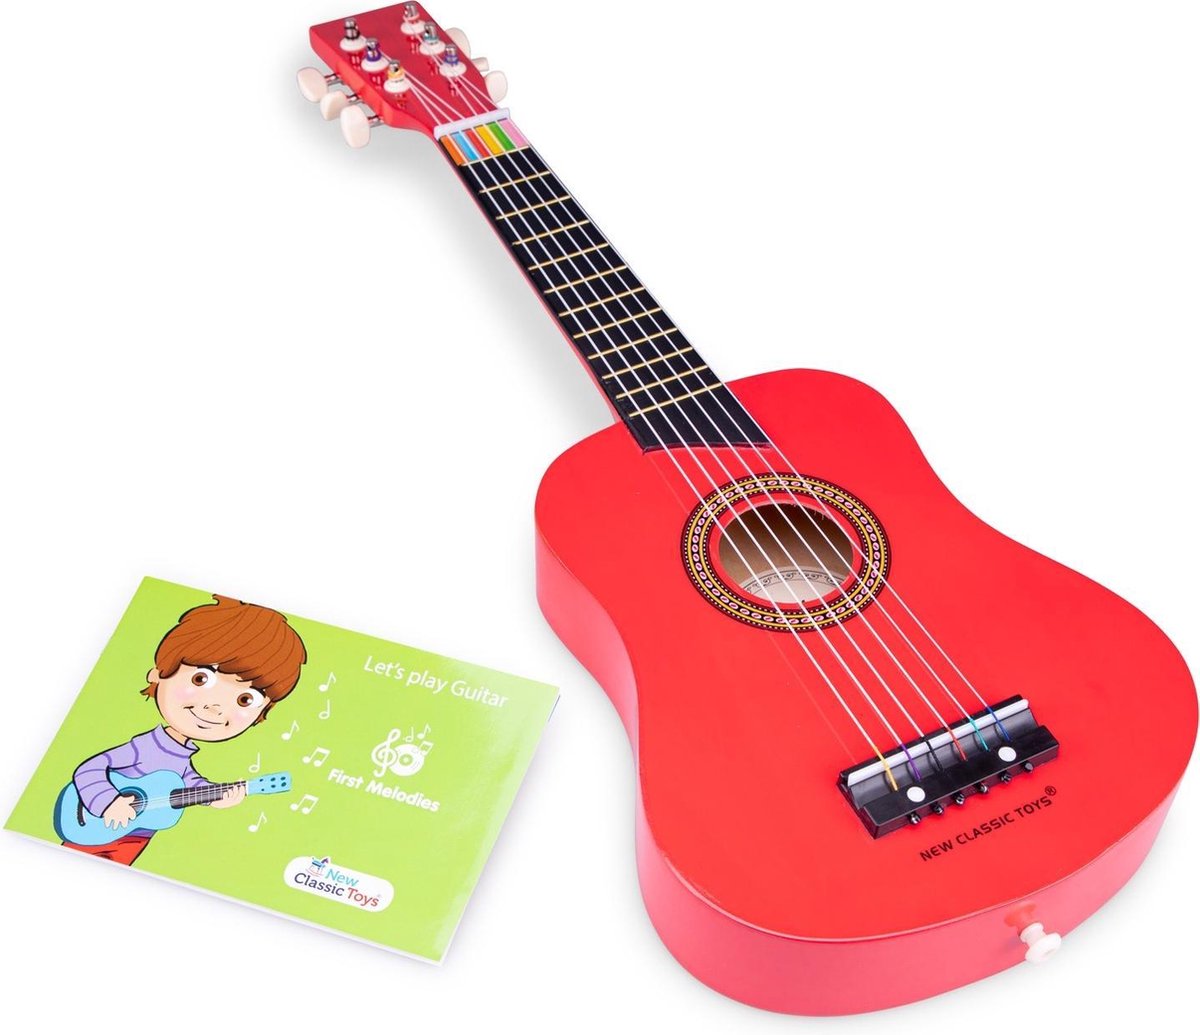 New Classic Toys gitaar De Luxe junior 64 cm hout 4 delig - Rood